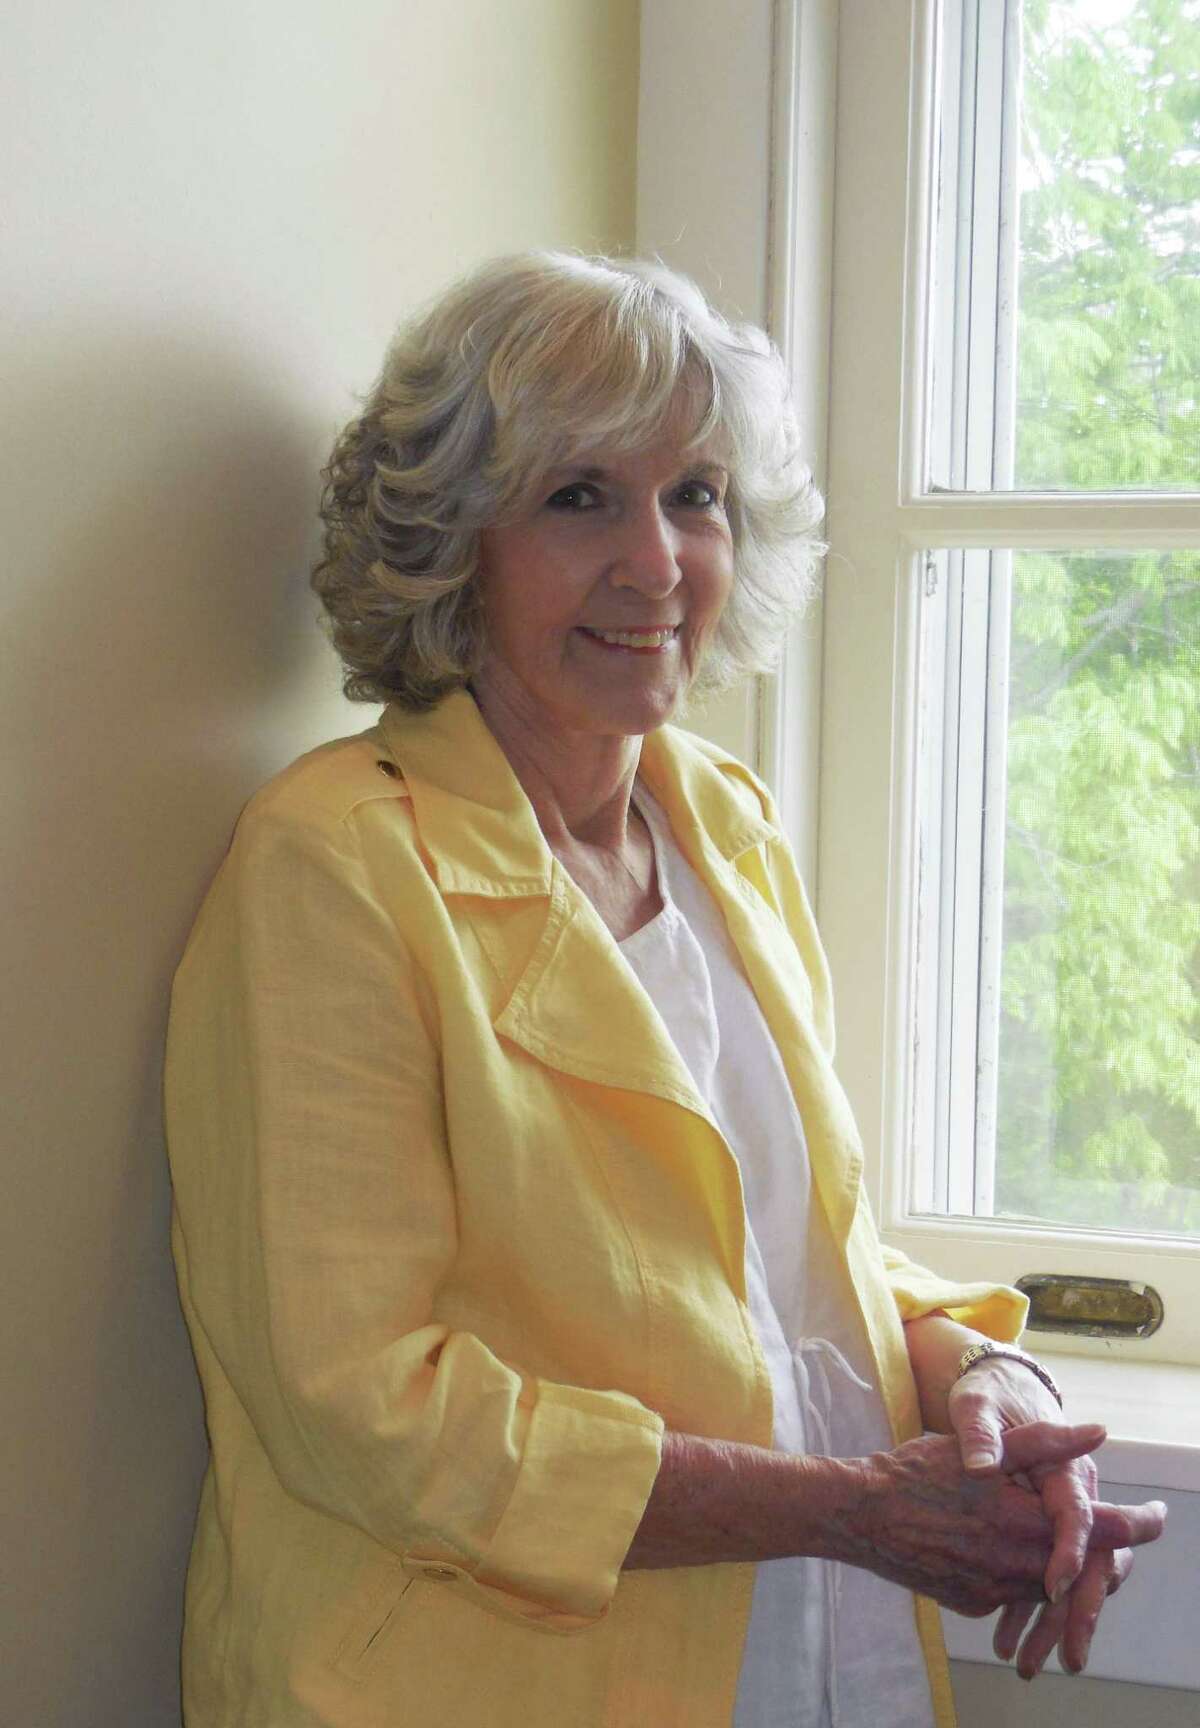 Author Sue Grafton has written 25 alphabet thrillers in 35 years.